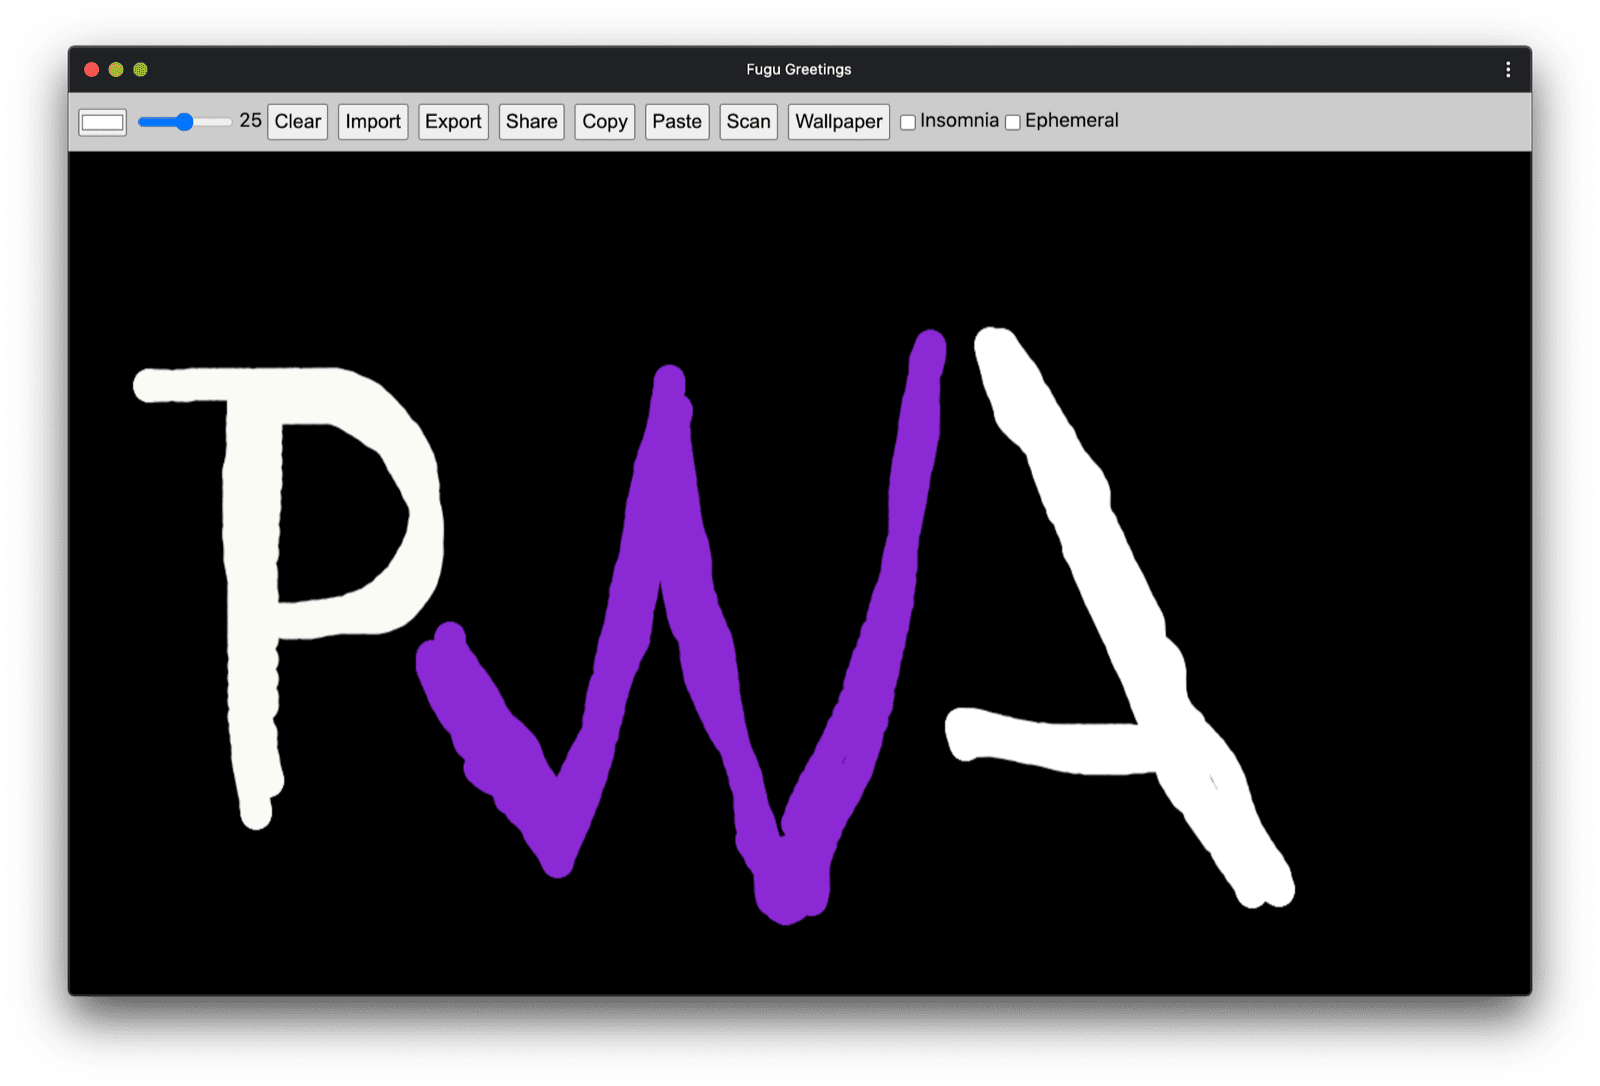 PWA 커뮤니티 로고와 유사한 그림이 표시된 Fugu 인사말 PWA